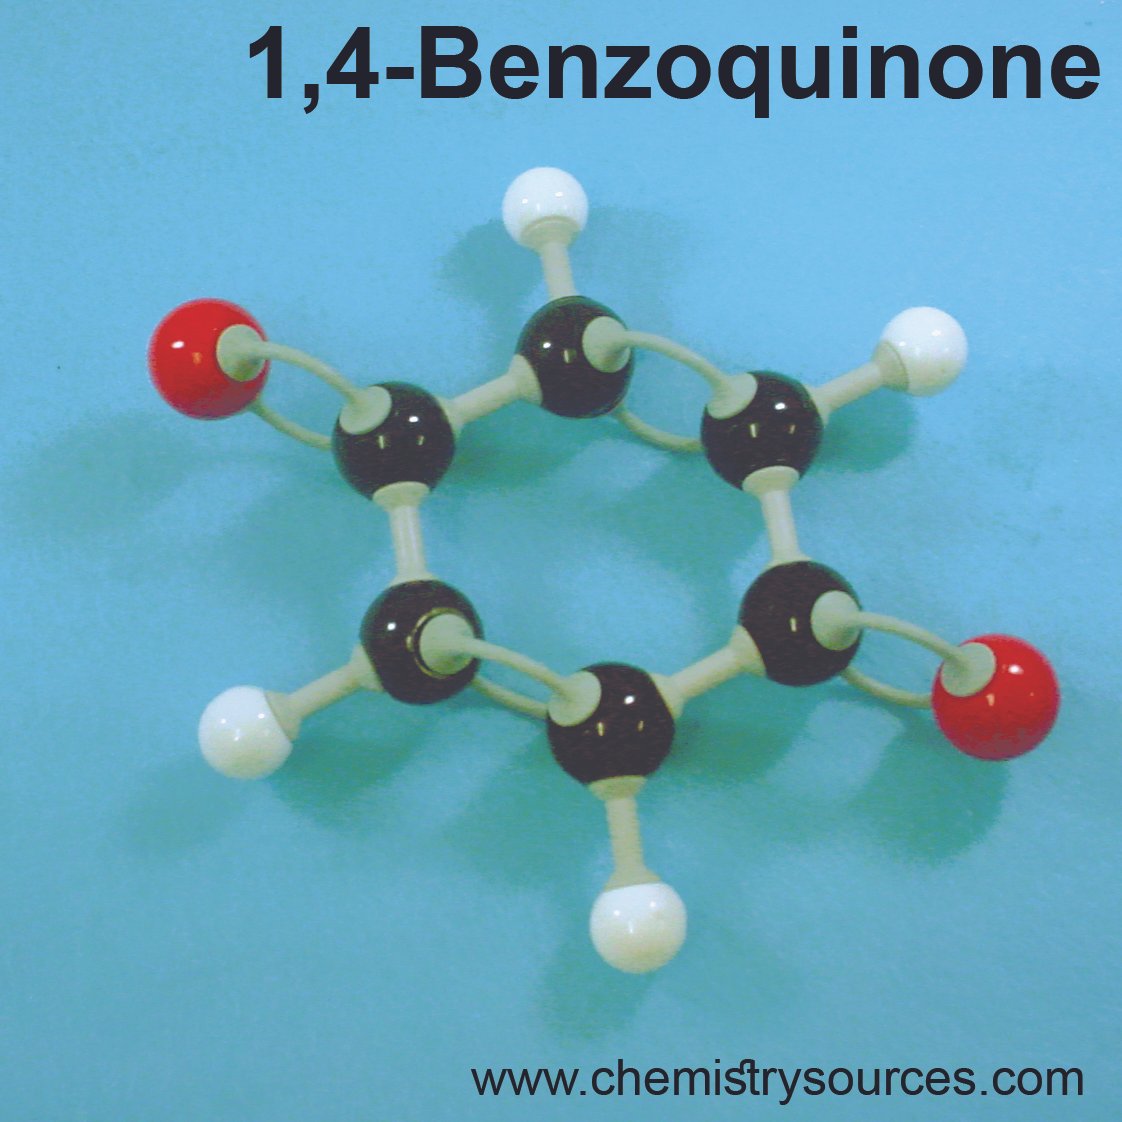 بنزوكينون (4،1-) Benzoquinone